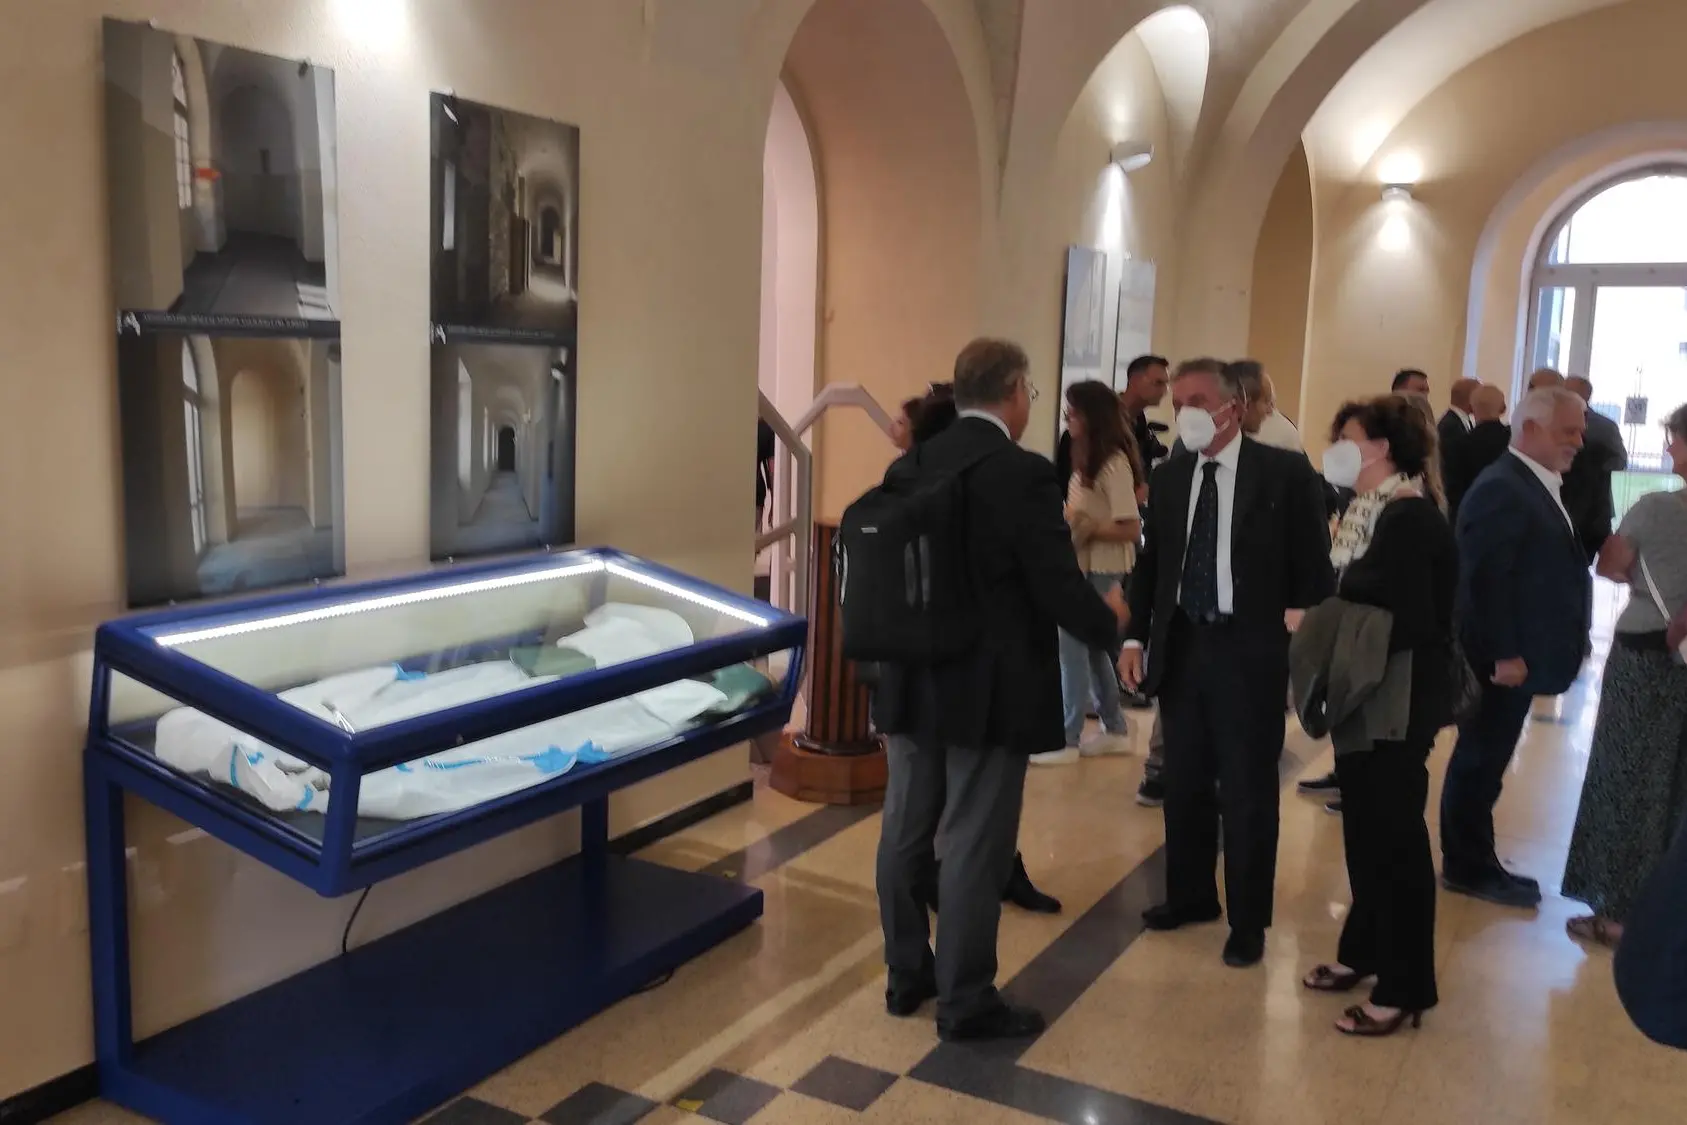 La Quarantena a Sassari attraverso le immagini: una mostra in biblioteca (foto Marras)